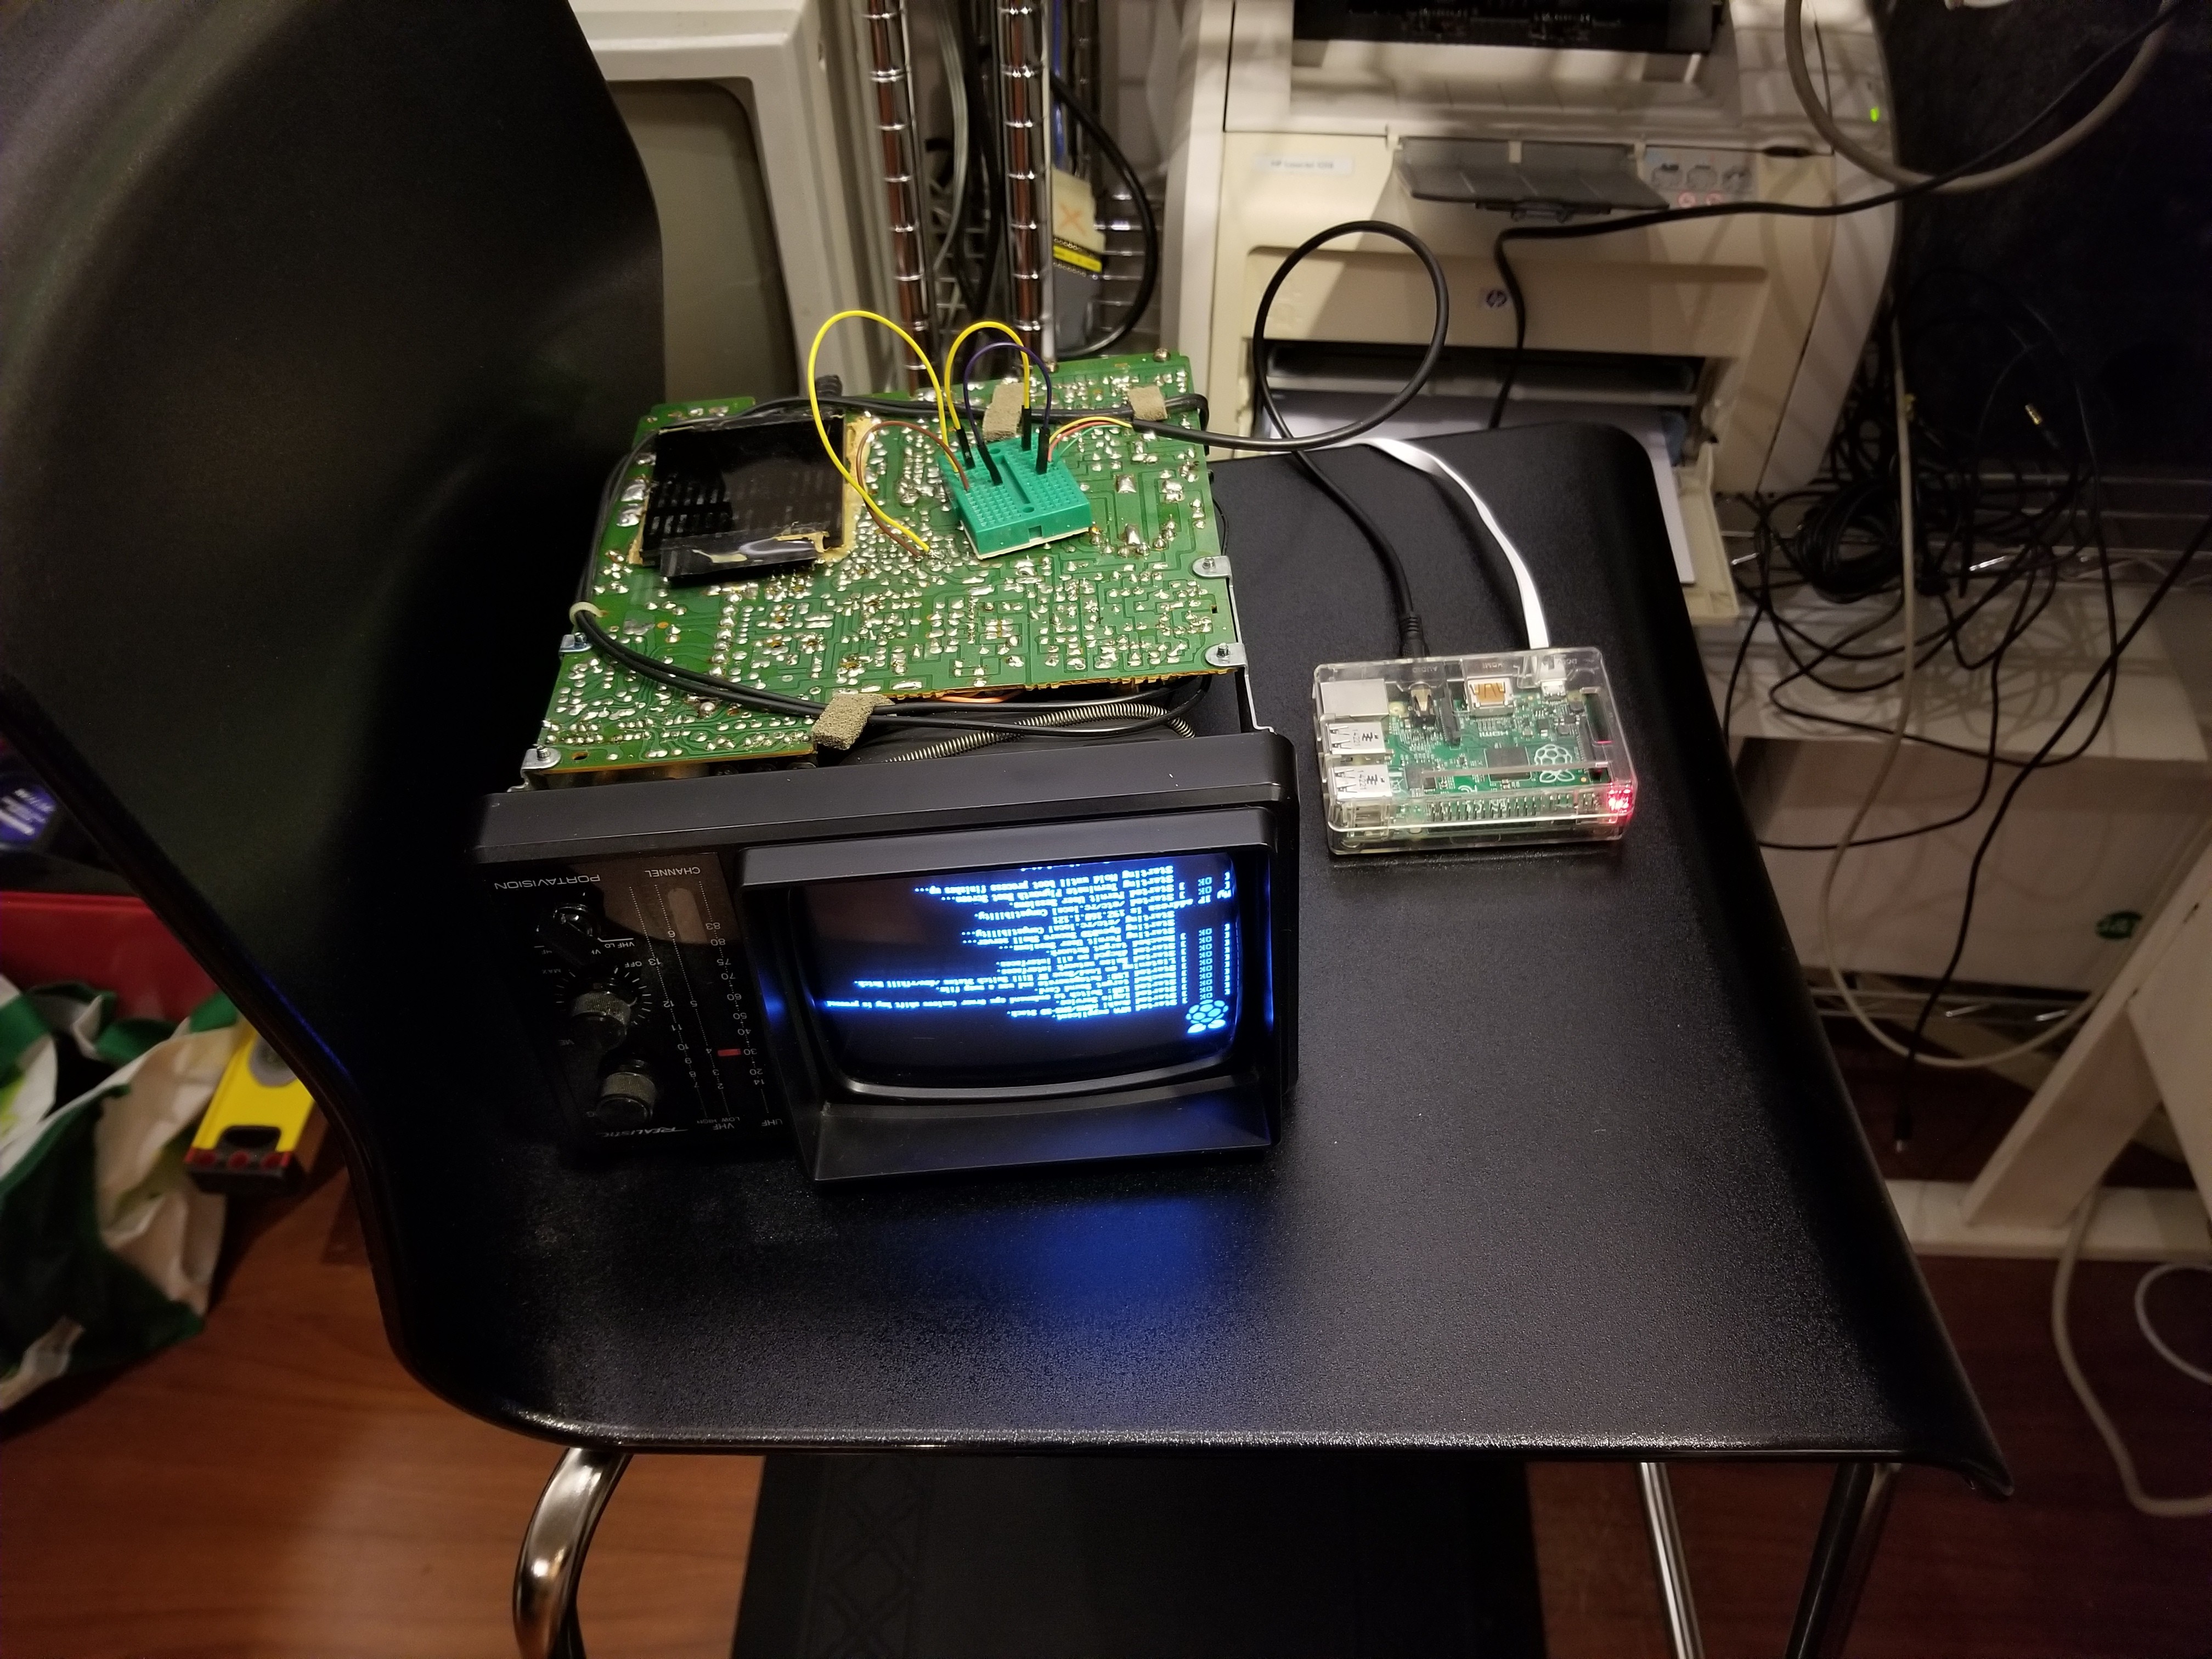 raspberry pi monitor cpu